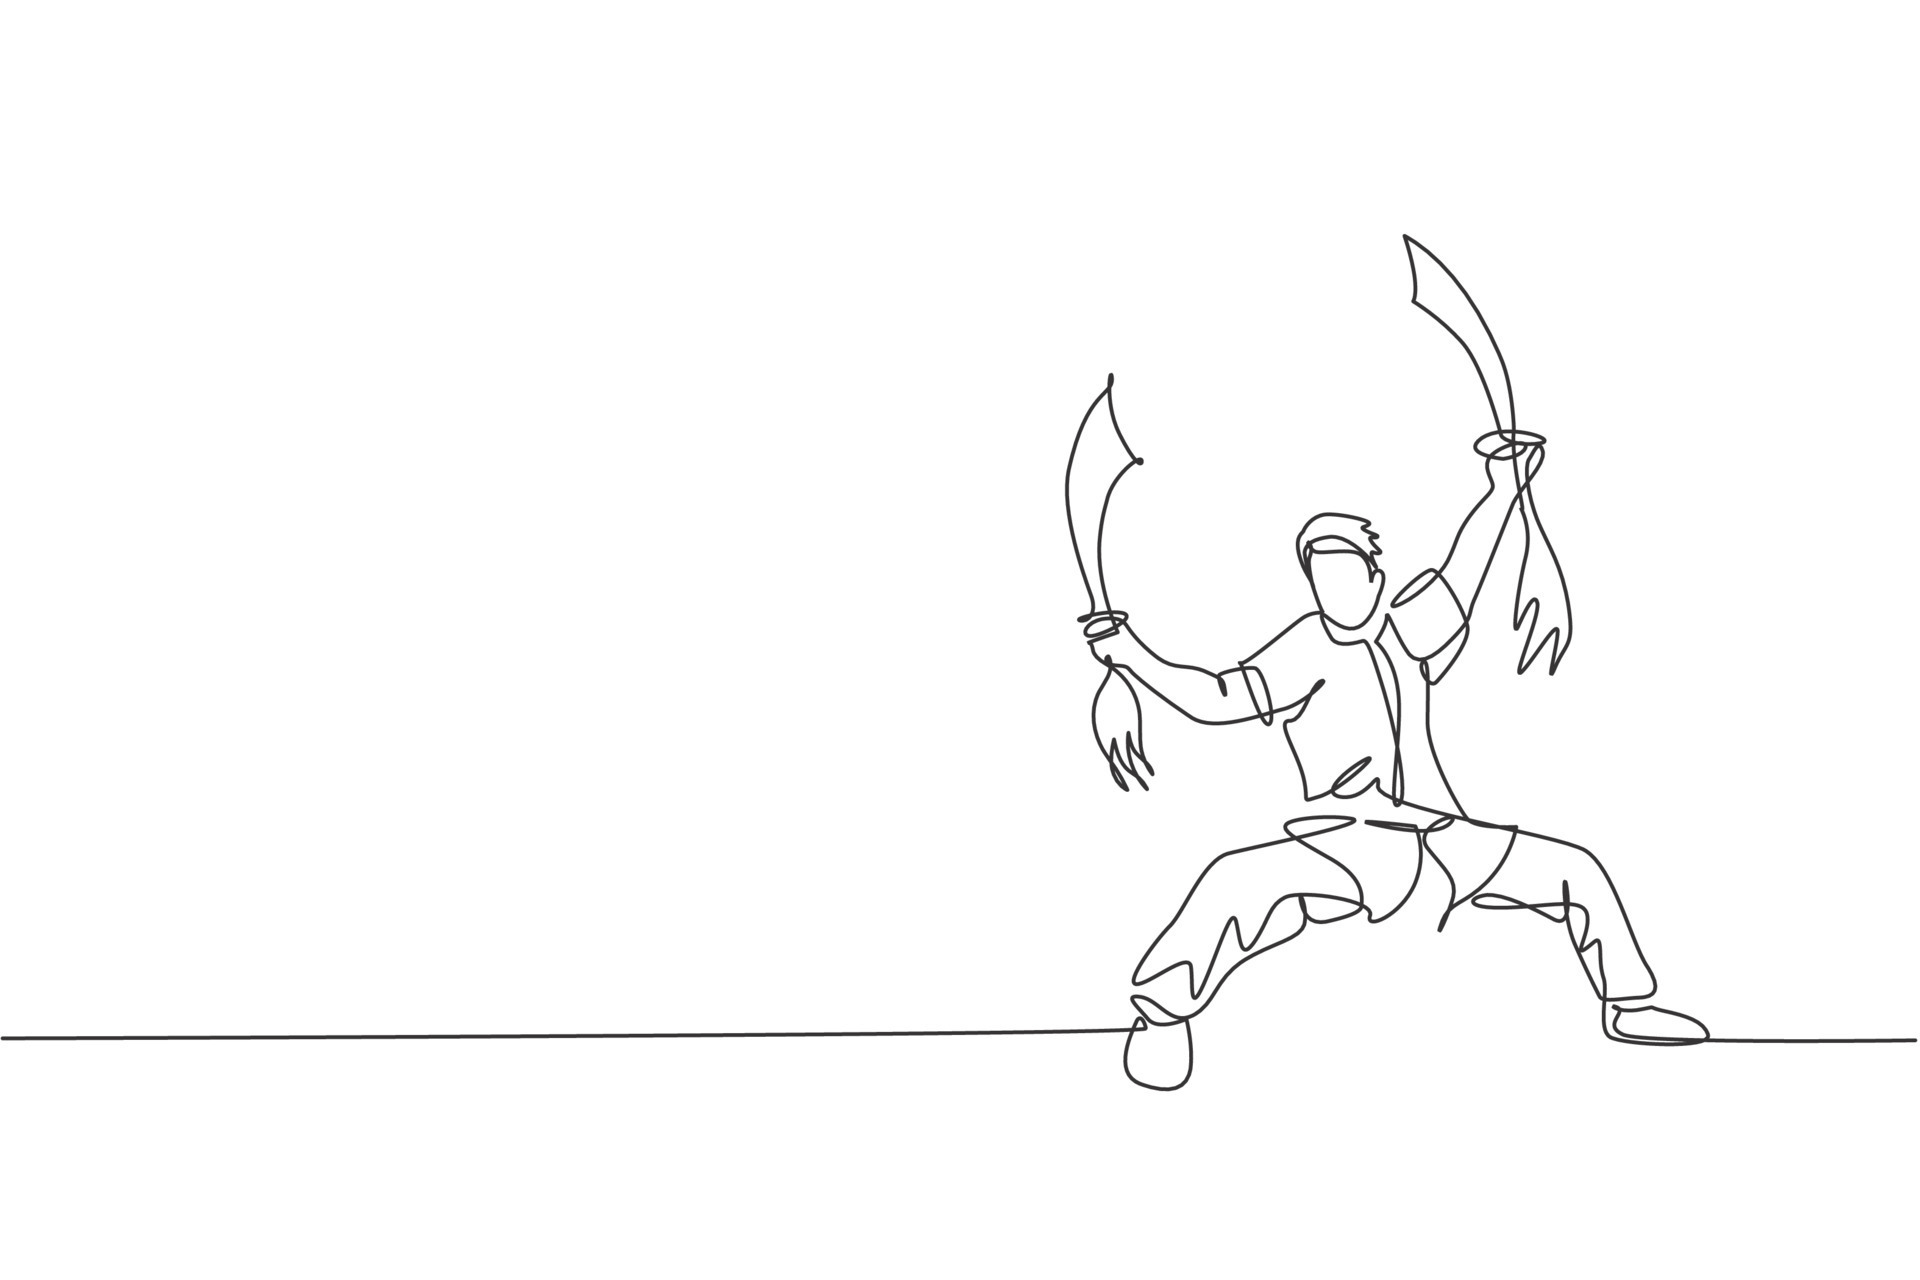 Um Desenho De Linha Contínua De Jovem Personagem Ninja Japonês Corajoso Em  Traje Preto Com Posição De Ataque. Conceito De Luta De Arte Marcial.  Ilustração Vetorial Gráfica Dinâmica De Desenho De Linha